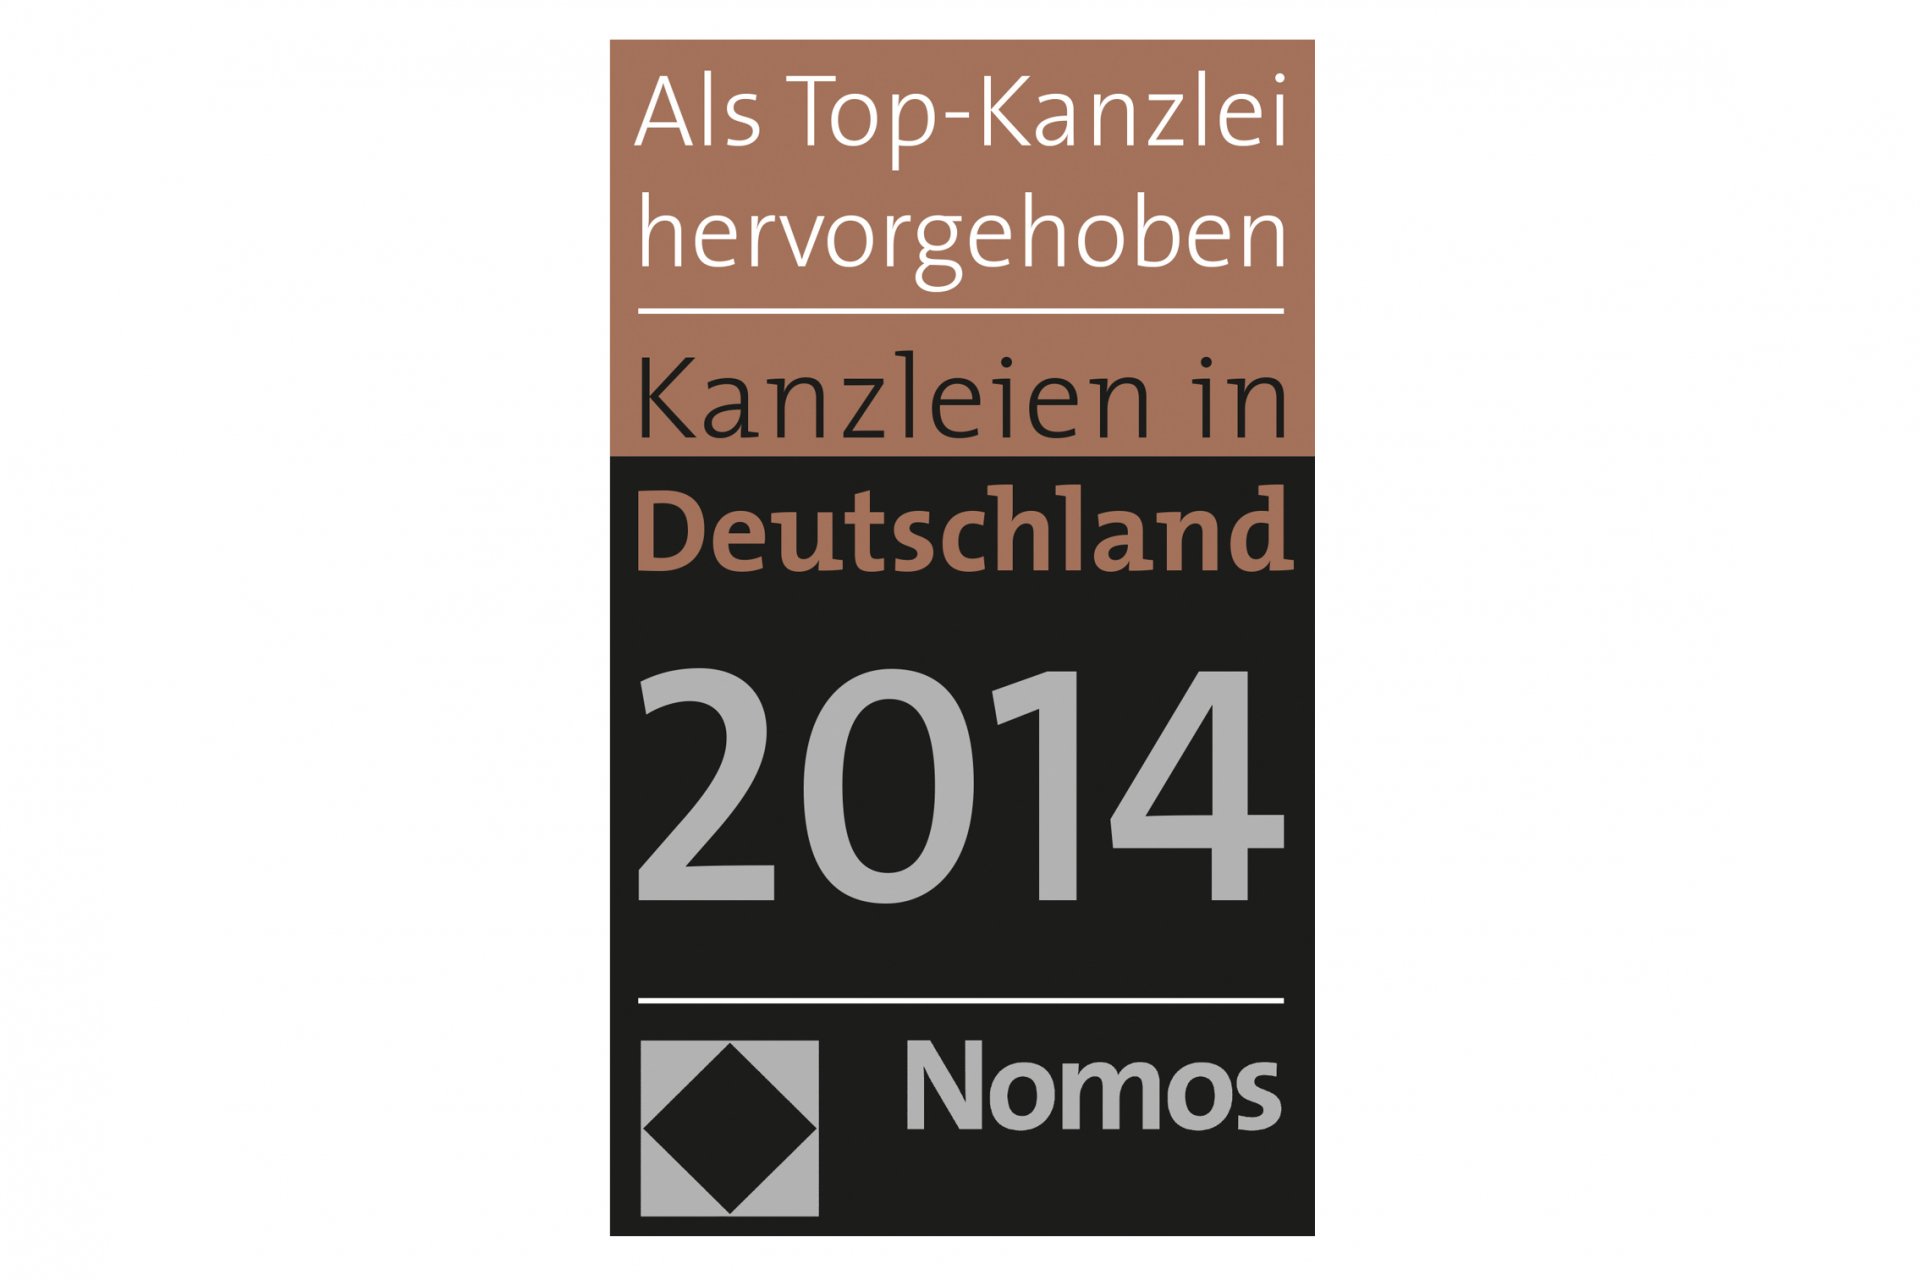 Kanzleien in Deutschland 2014